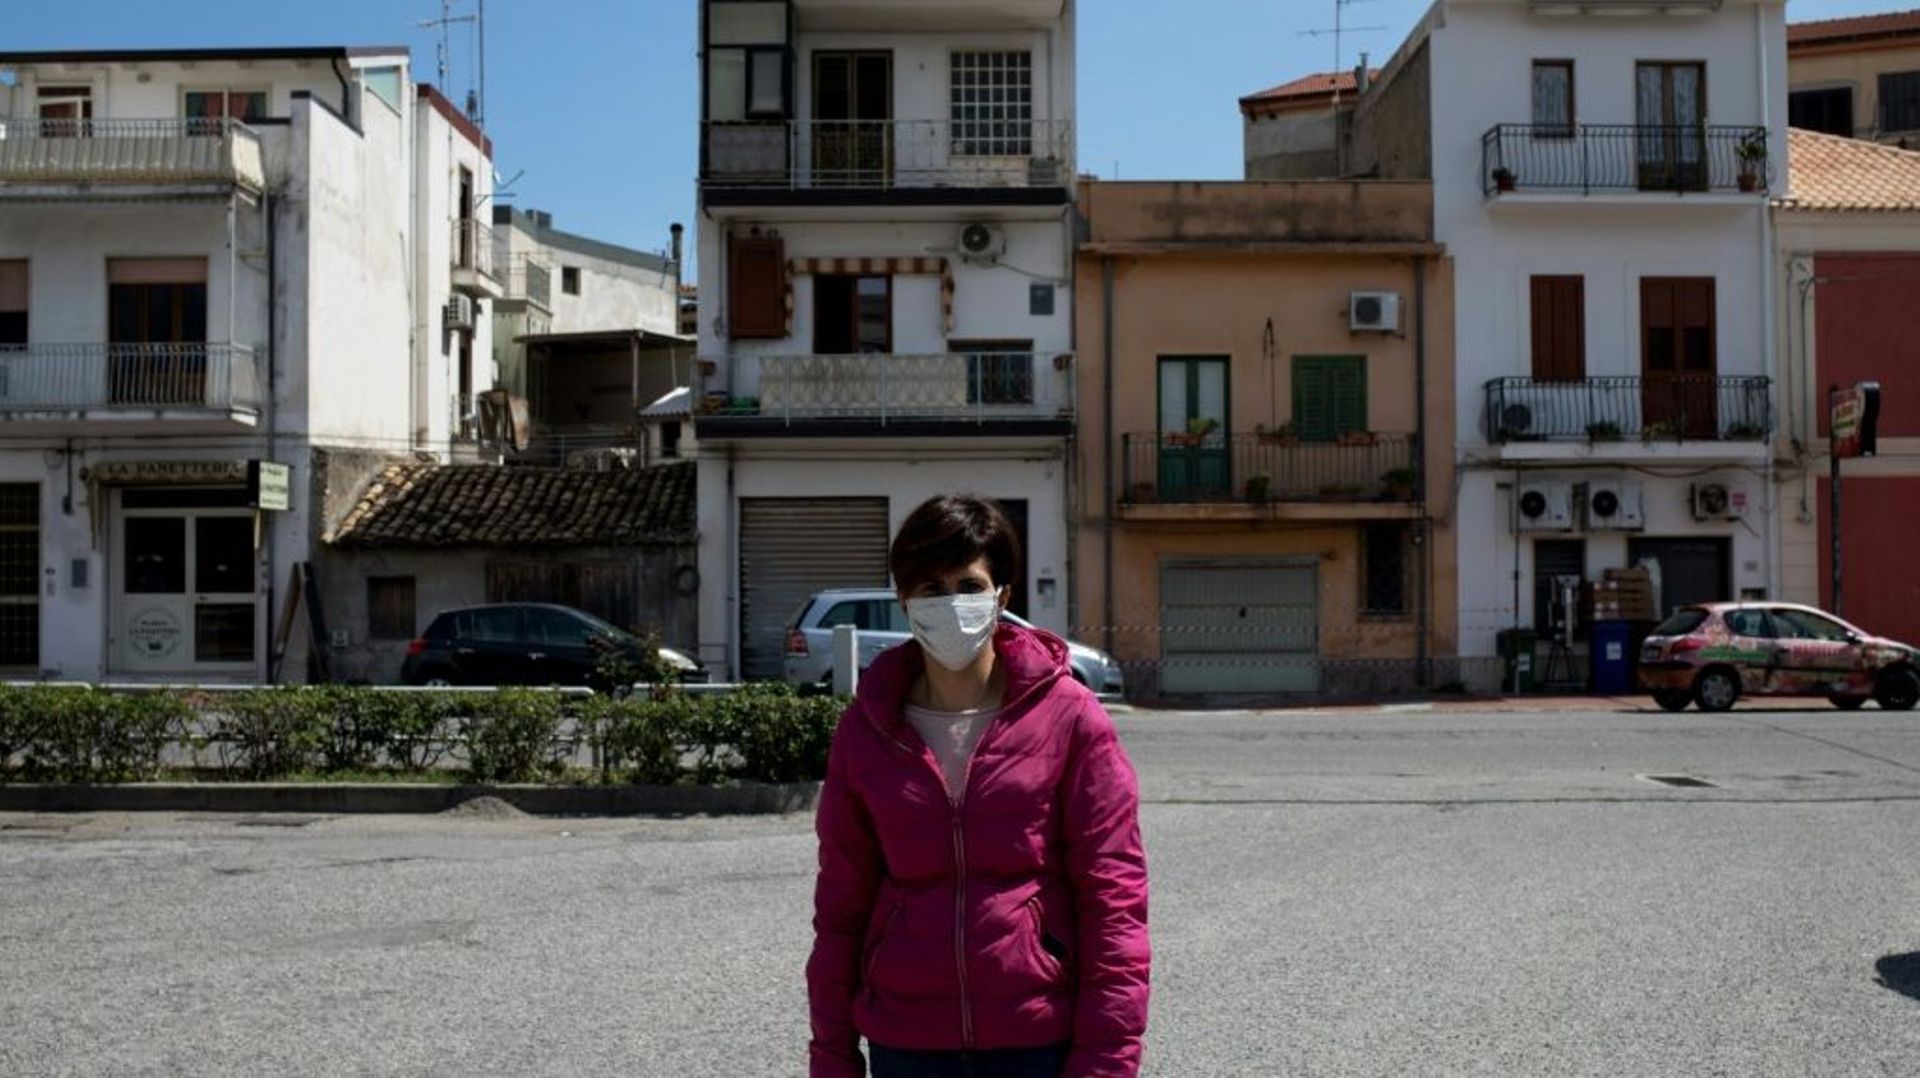 Bruna Filippone, une habitante de Locri membre de l'Association "Défendons l'hôpital" est devant le bâtiment, le 7 avril 2020